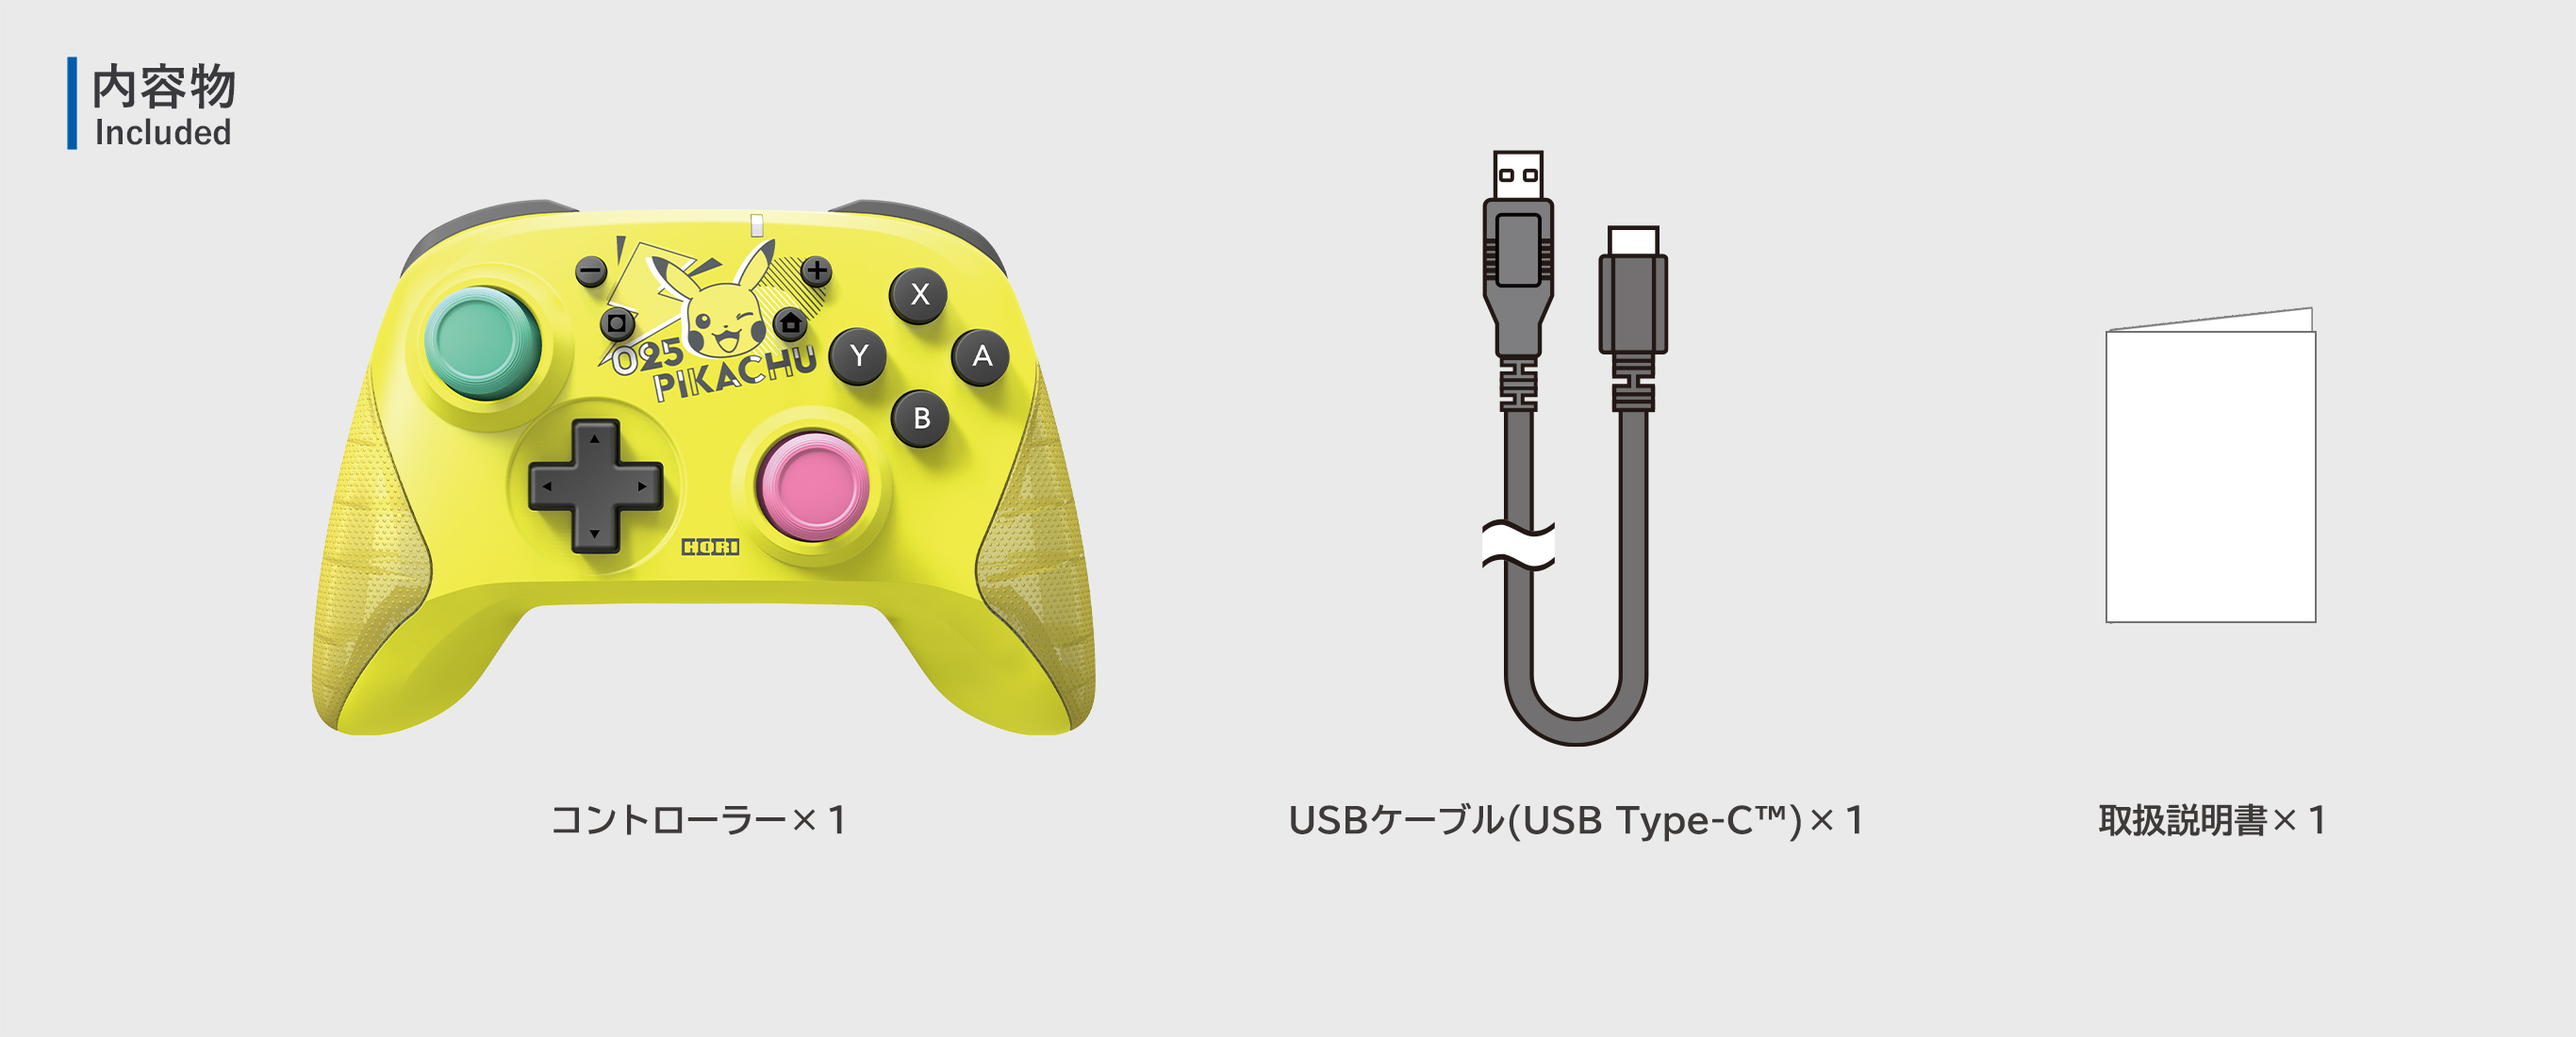 株式会社 HORI ワイヤレスホリパッド for Nintendo Switch ピカチュウ – POP